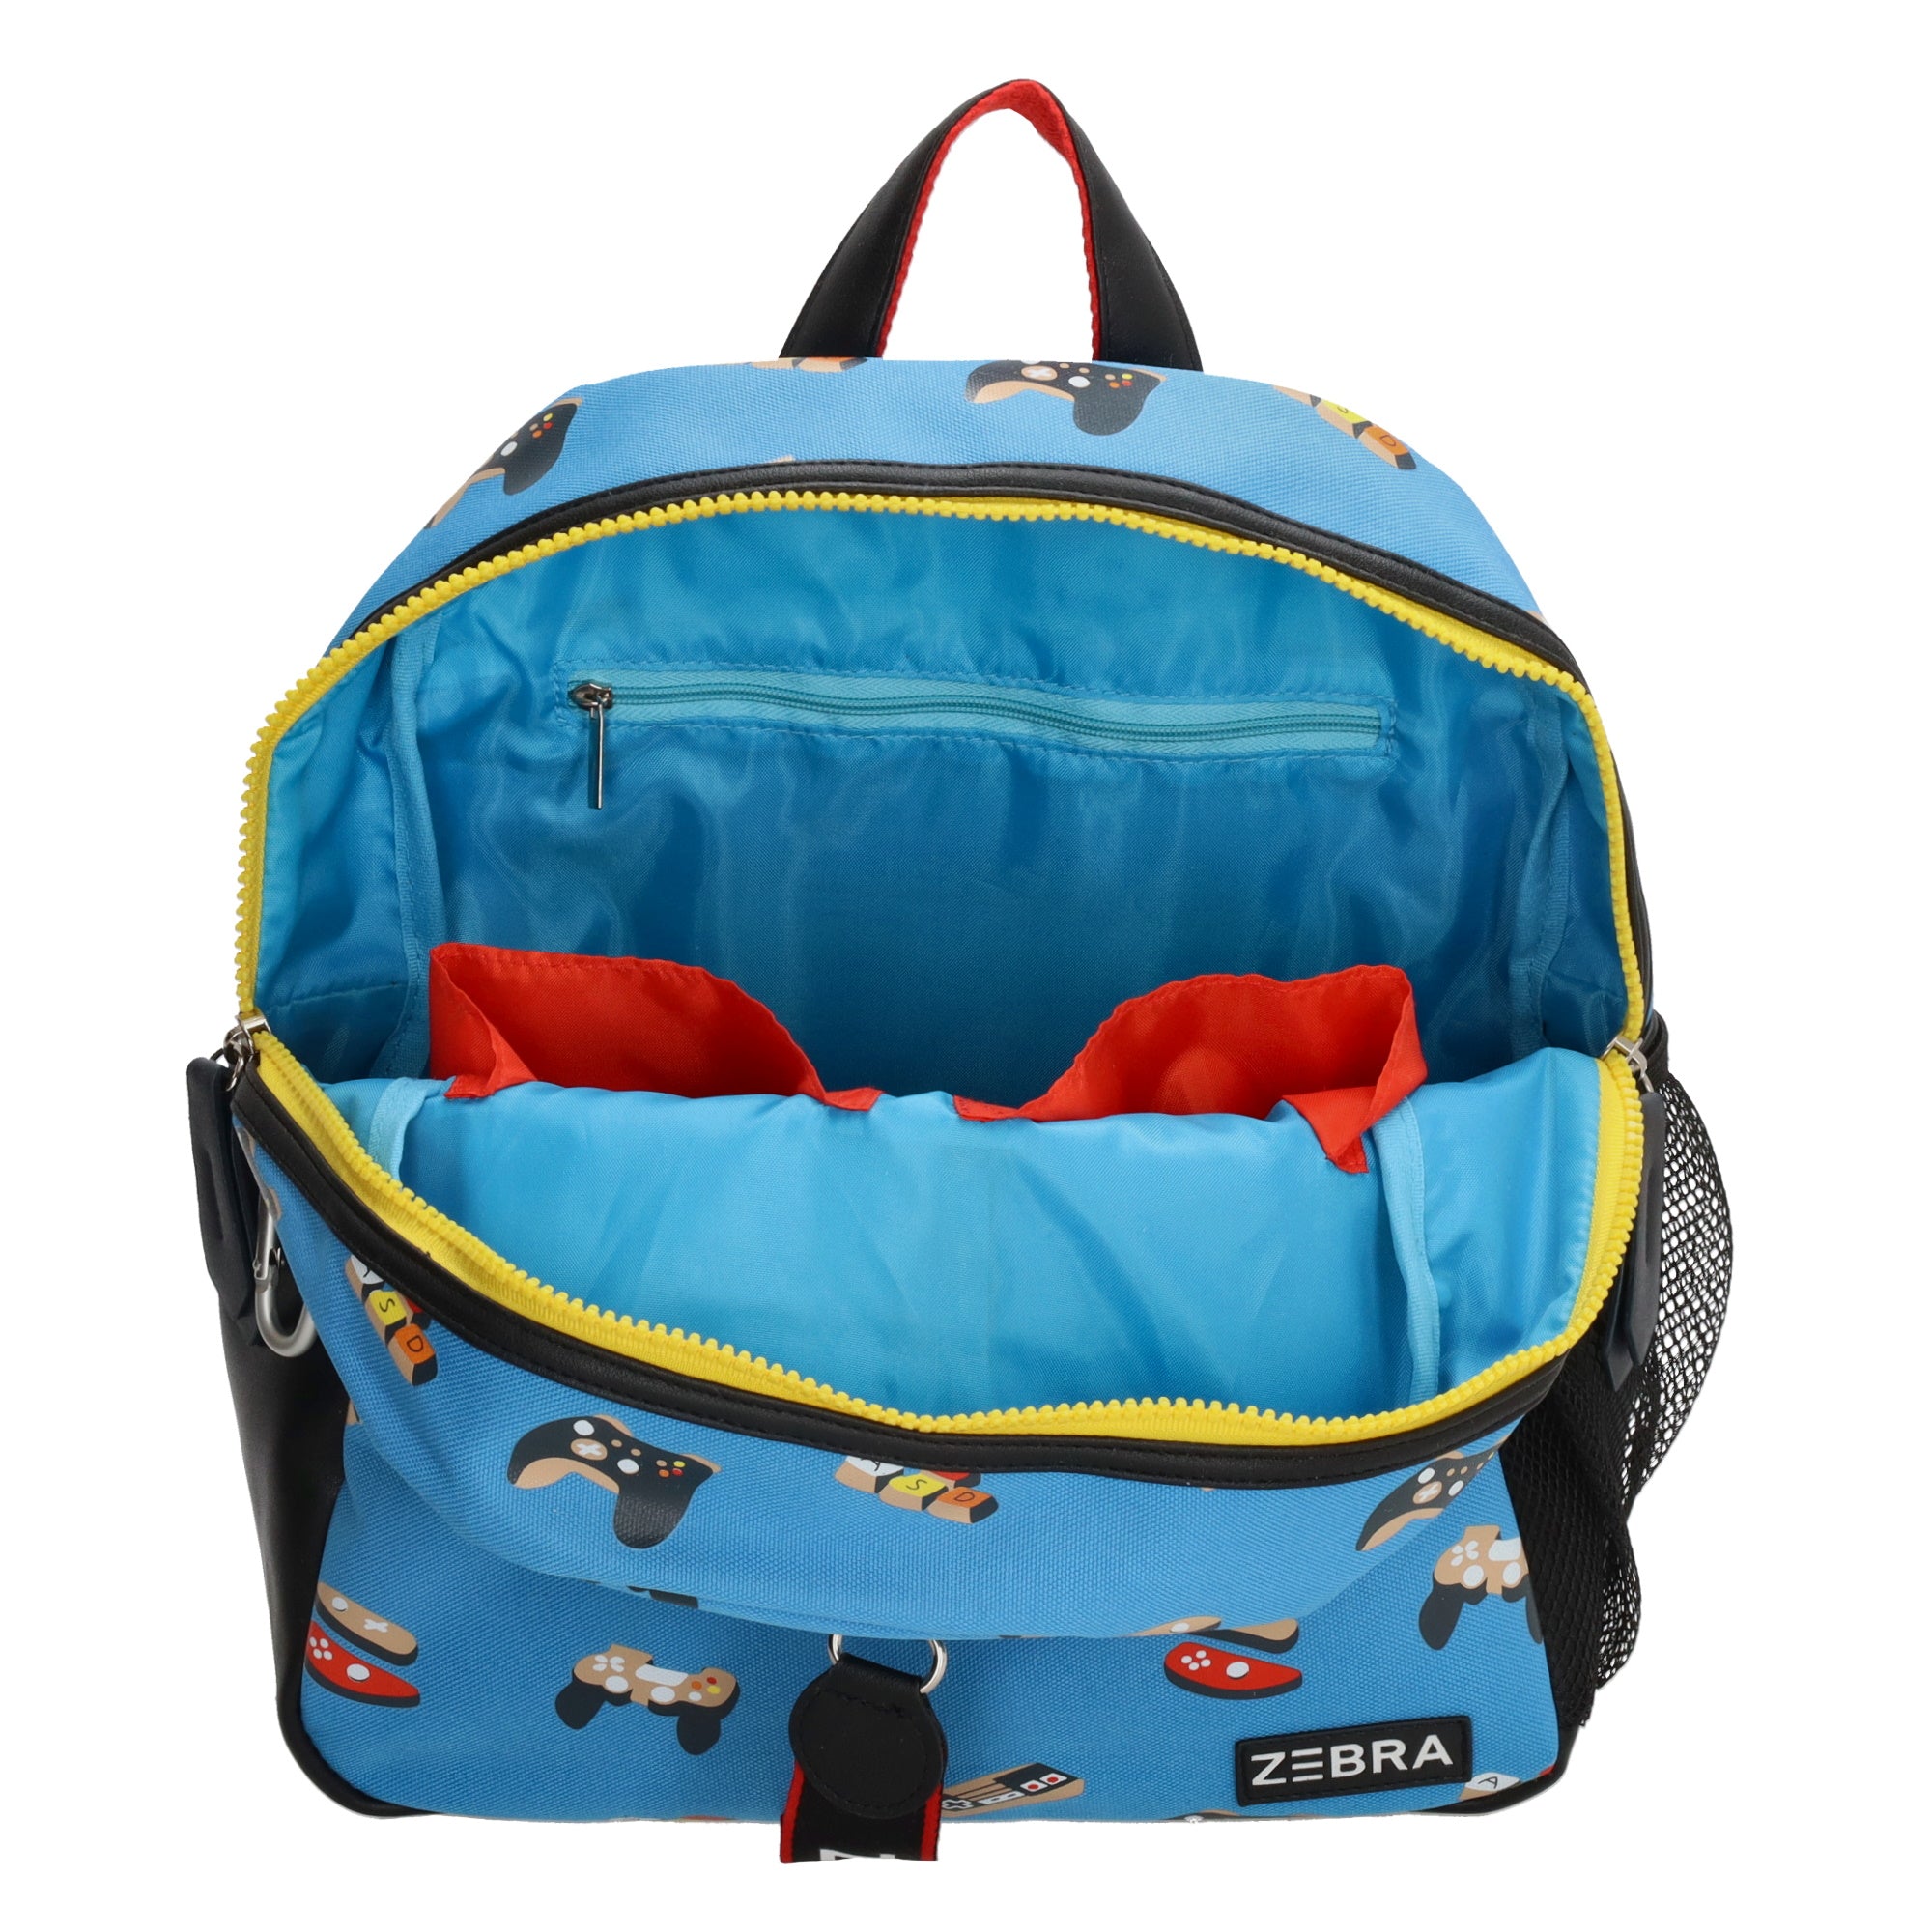 Zebra Backpack Boys - Soccer Light blue